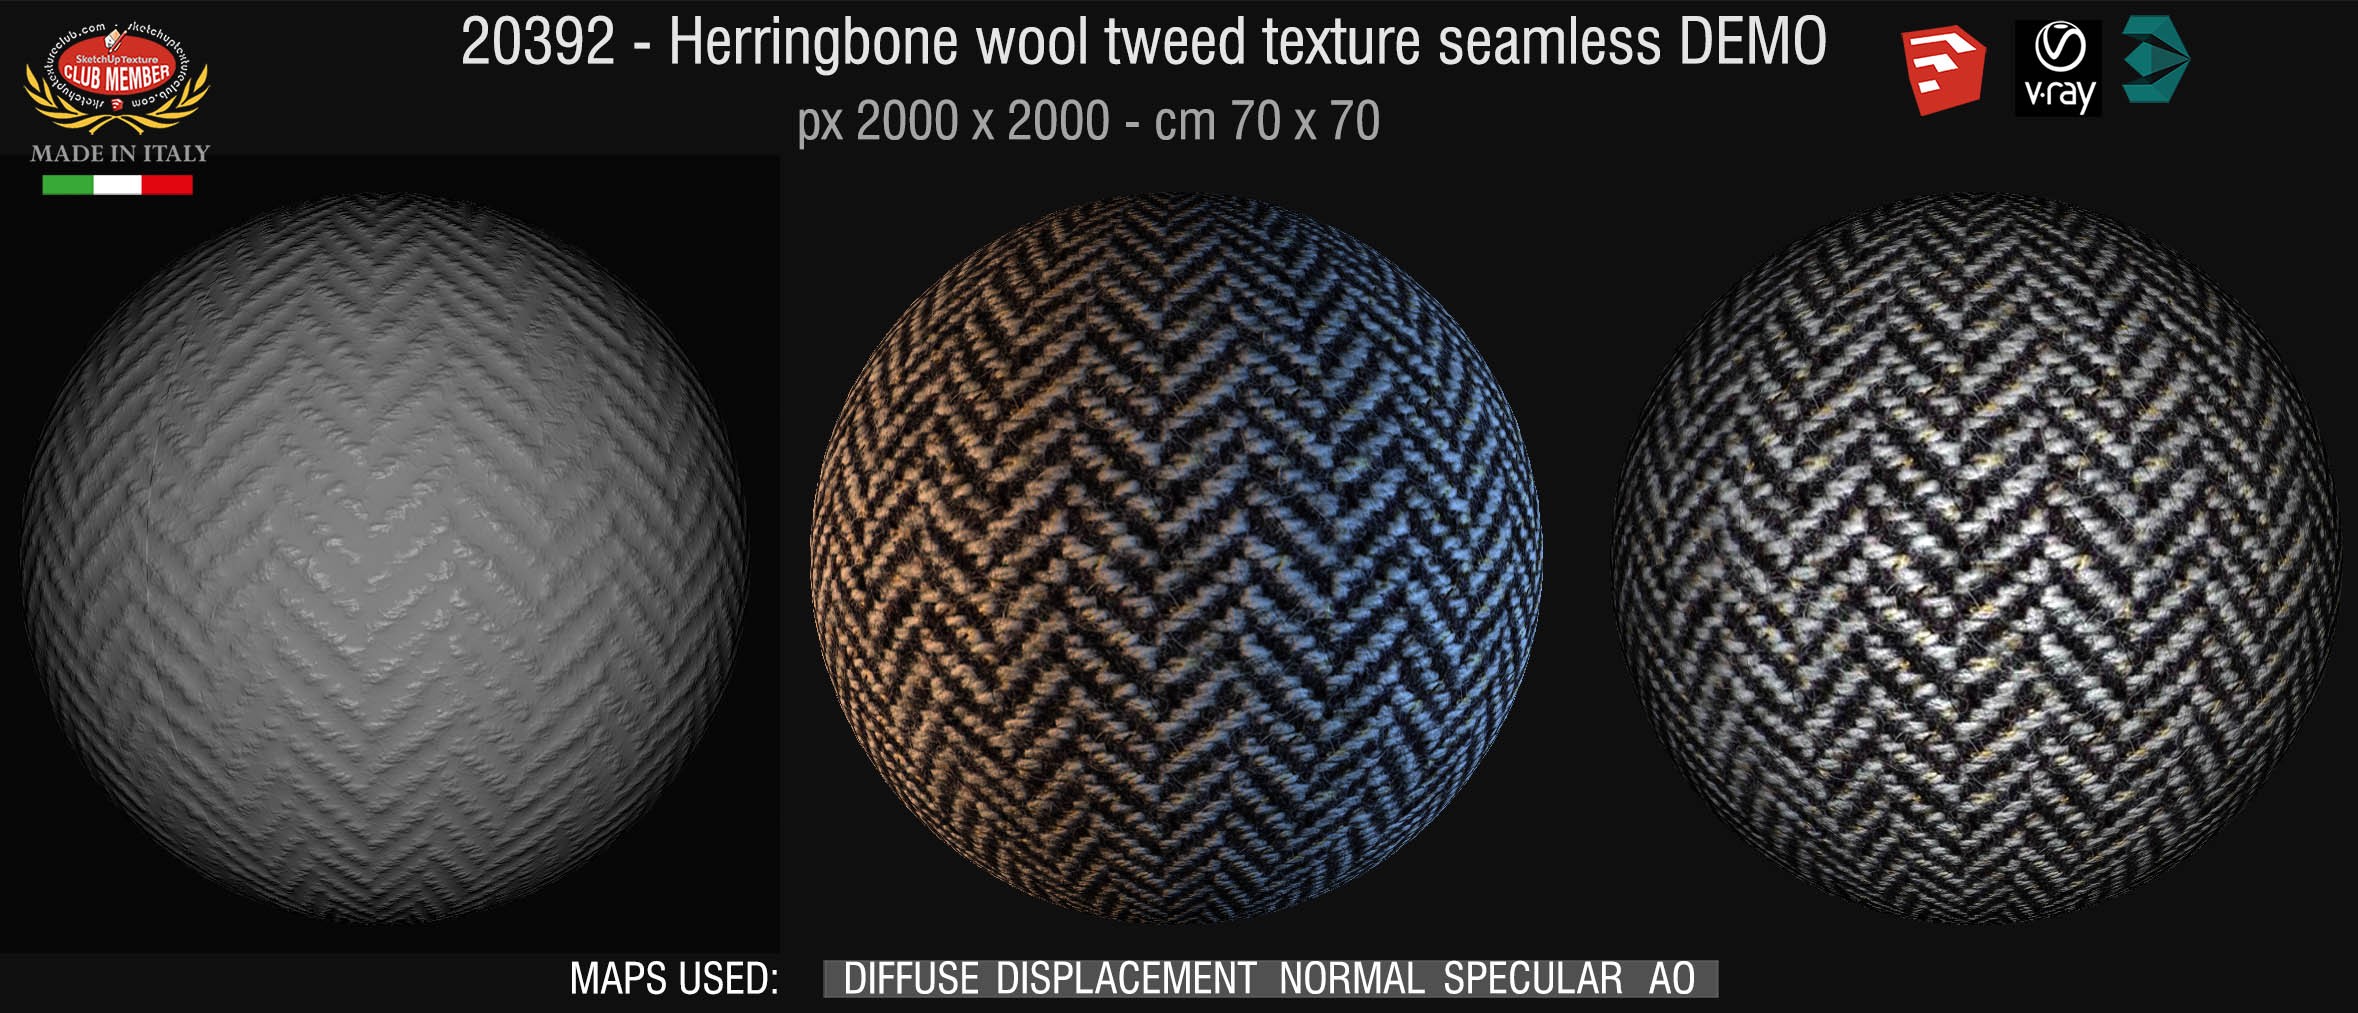 20392 Herringbone wool tweed texture seamless + maps DEMO